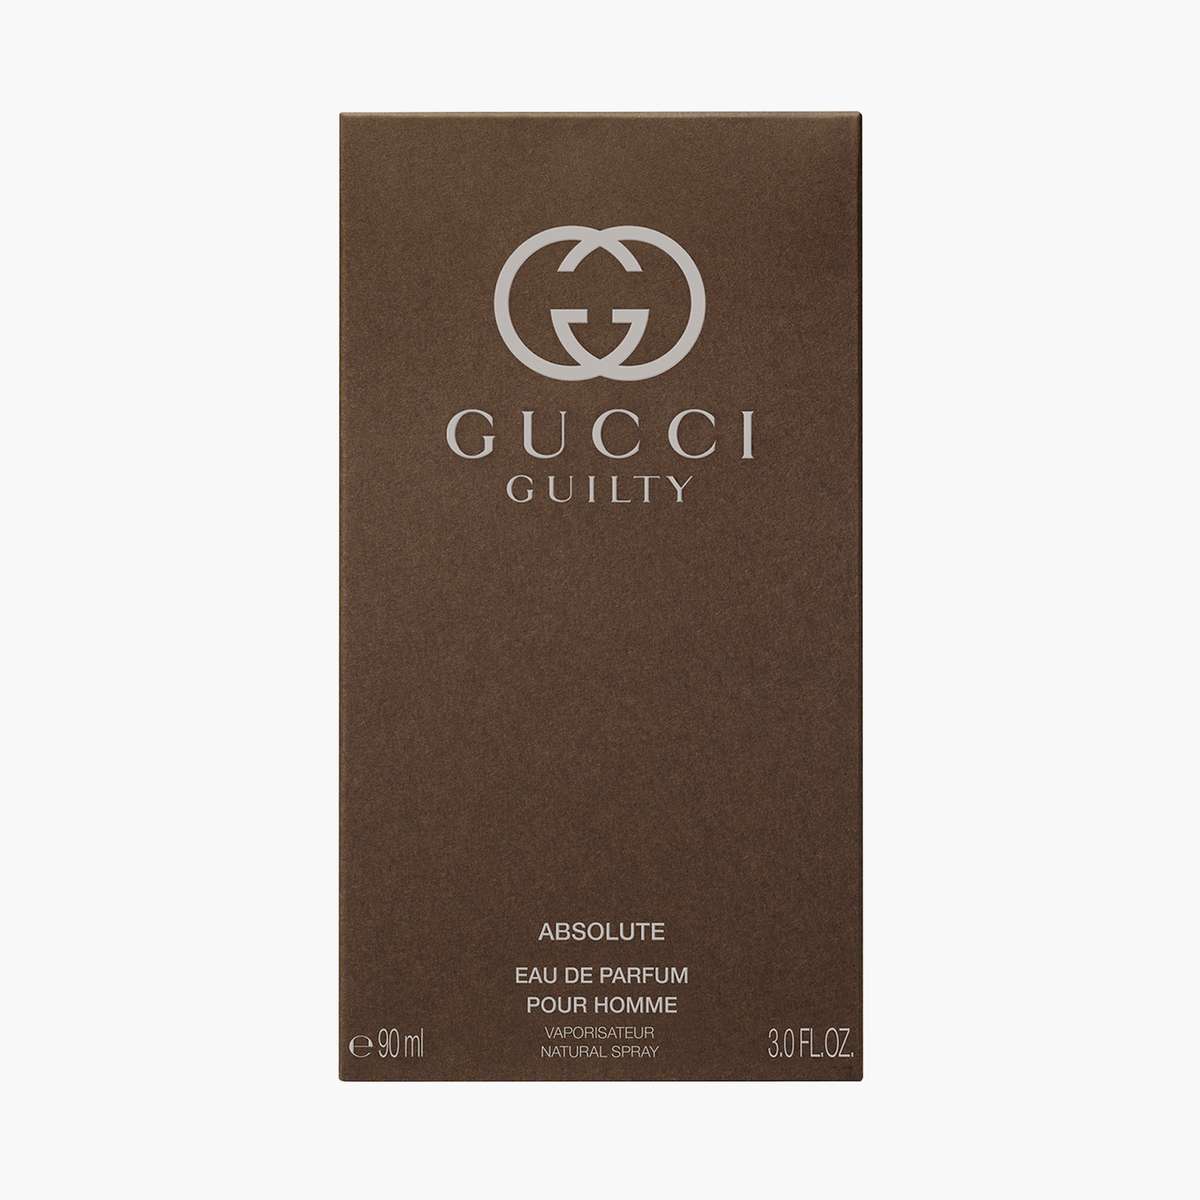 Gucci Guilty Absolute Pour Homme Eau De Parfum - 90ML